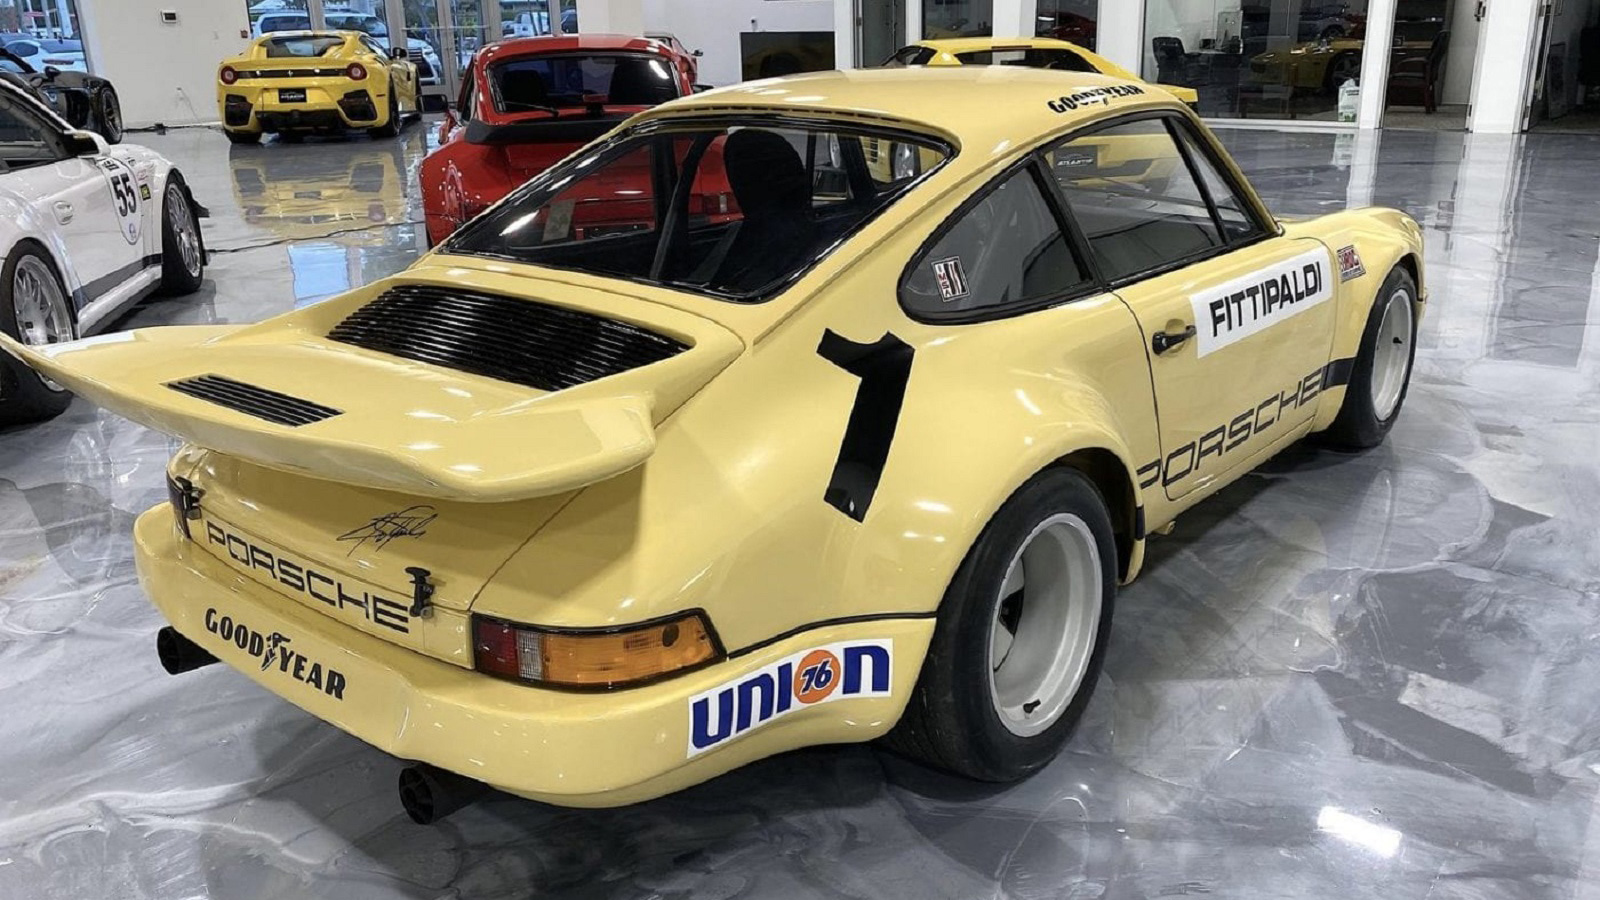 Πωλείται η σπάνια Porsche 911 του Pablo Escobar